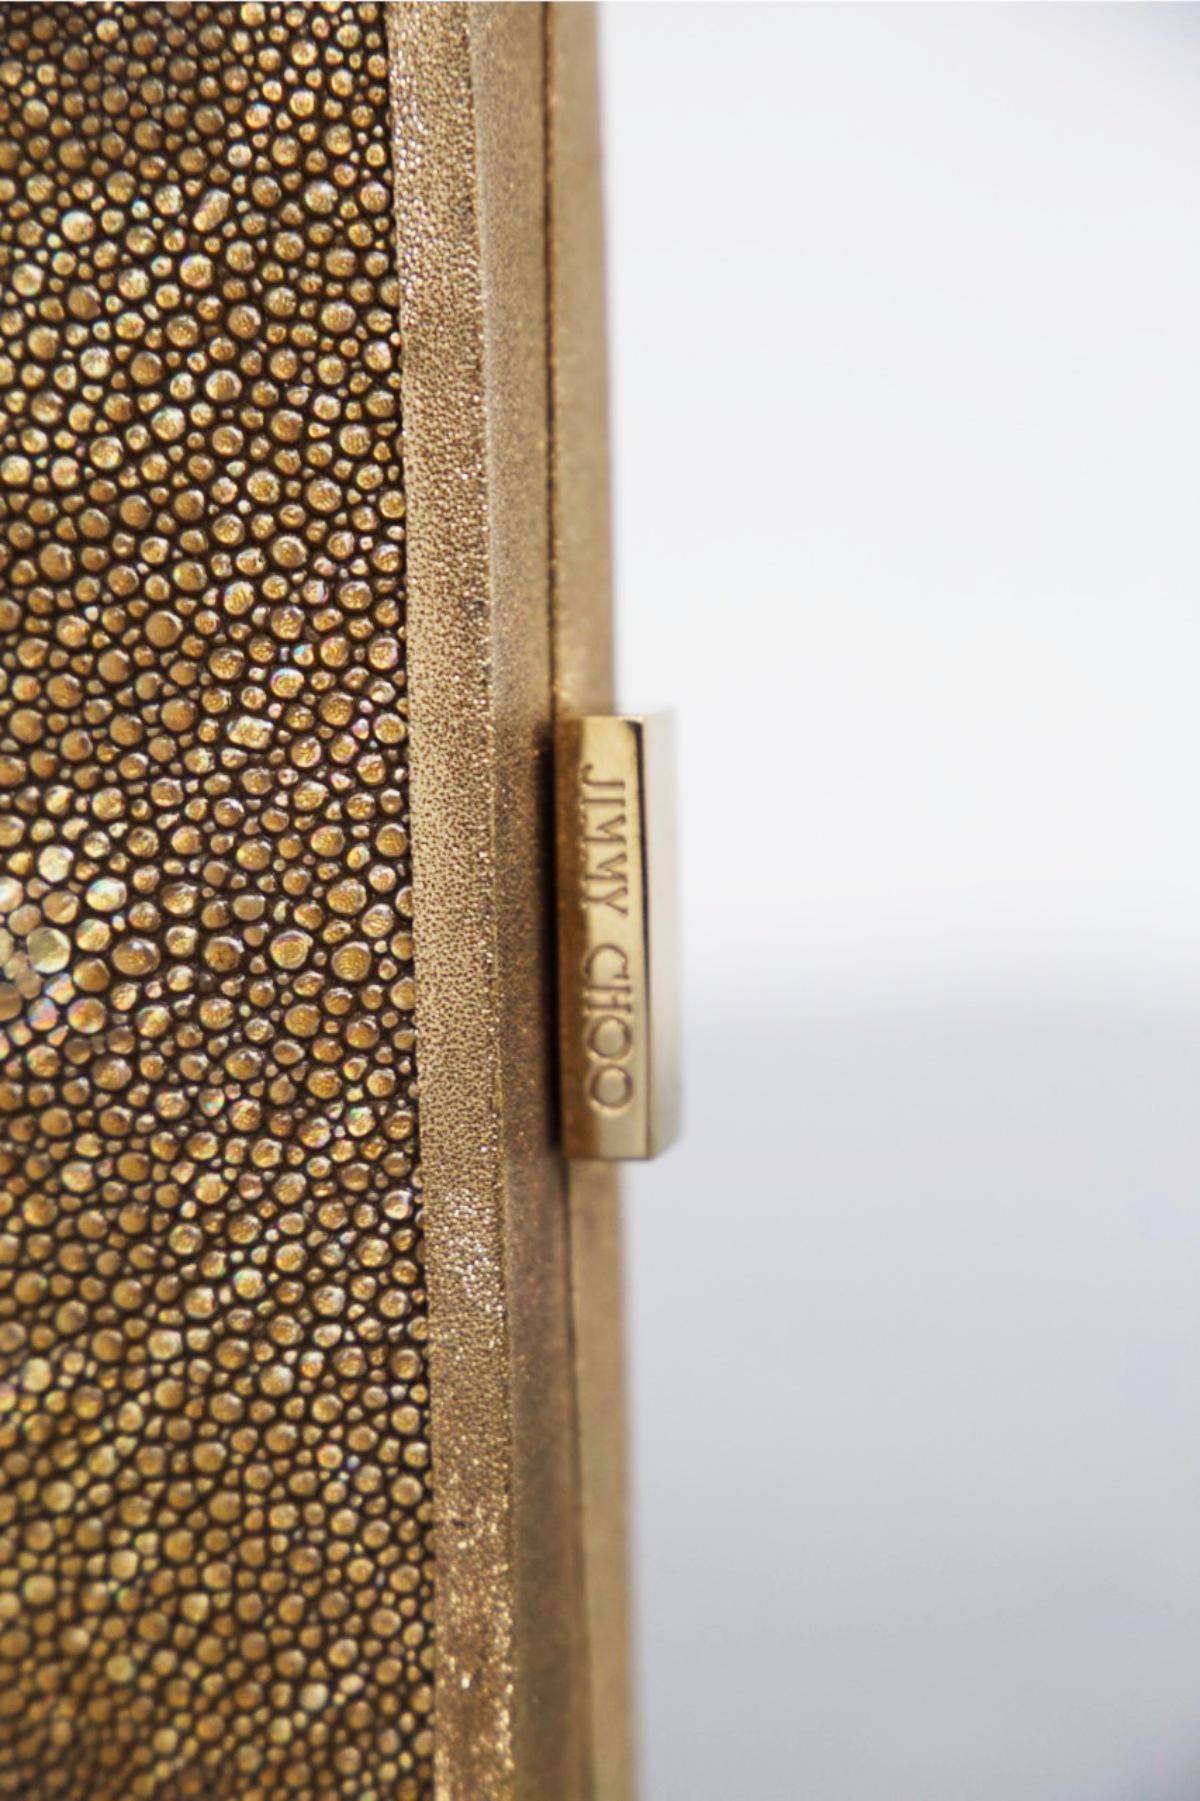 Superbe petit sac à main conçu et marqué Jimmy Choo, datant des années 1990.
MARQUE ORIGINALE.
Le sac à main est un sac à main, très petit, apte à transporter du maquillage.
Il est constitué d'une structure rigide dorée brillante, très élégante. Le